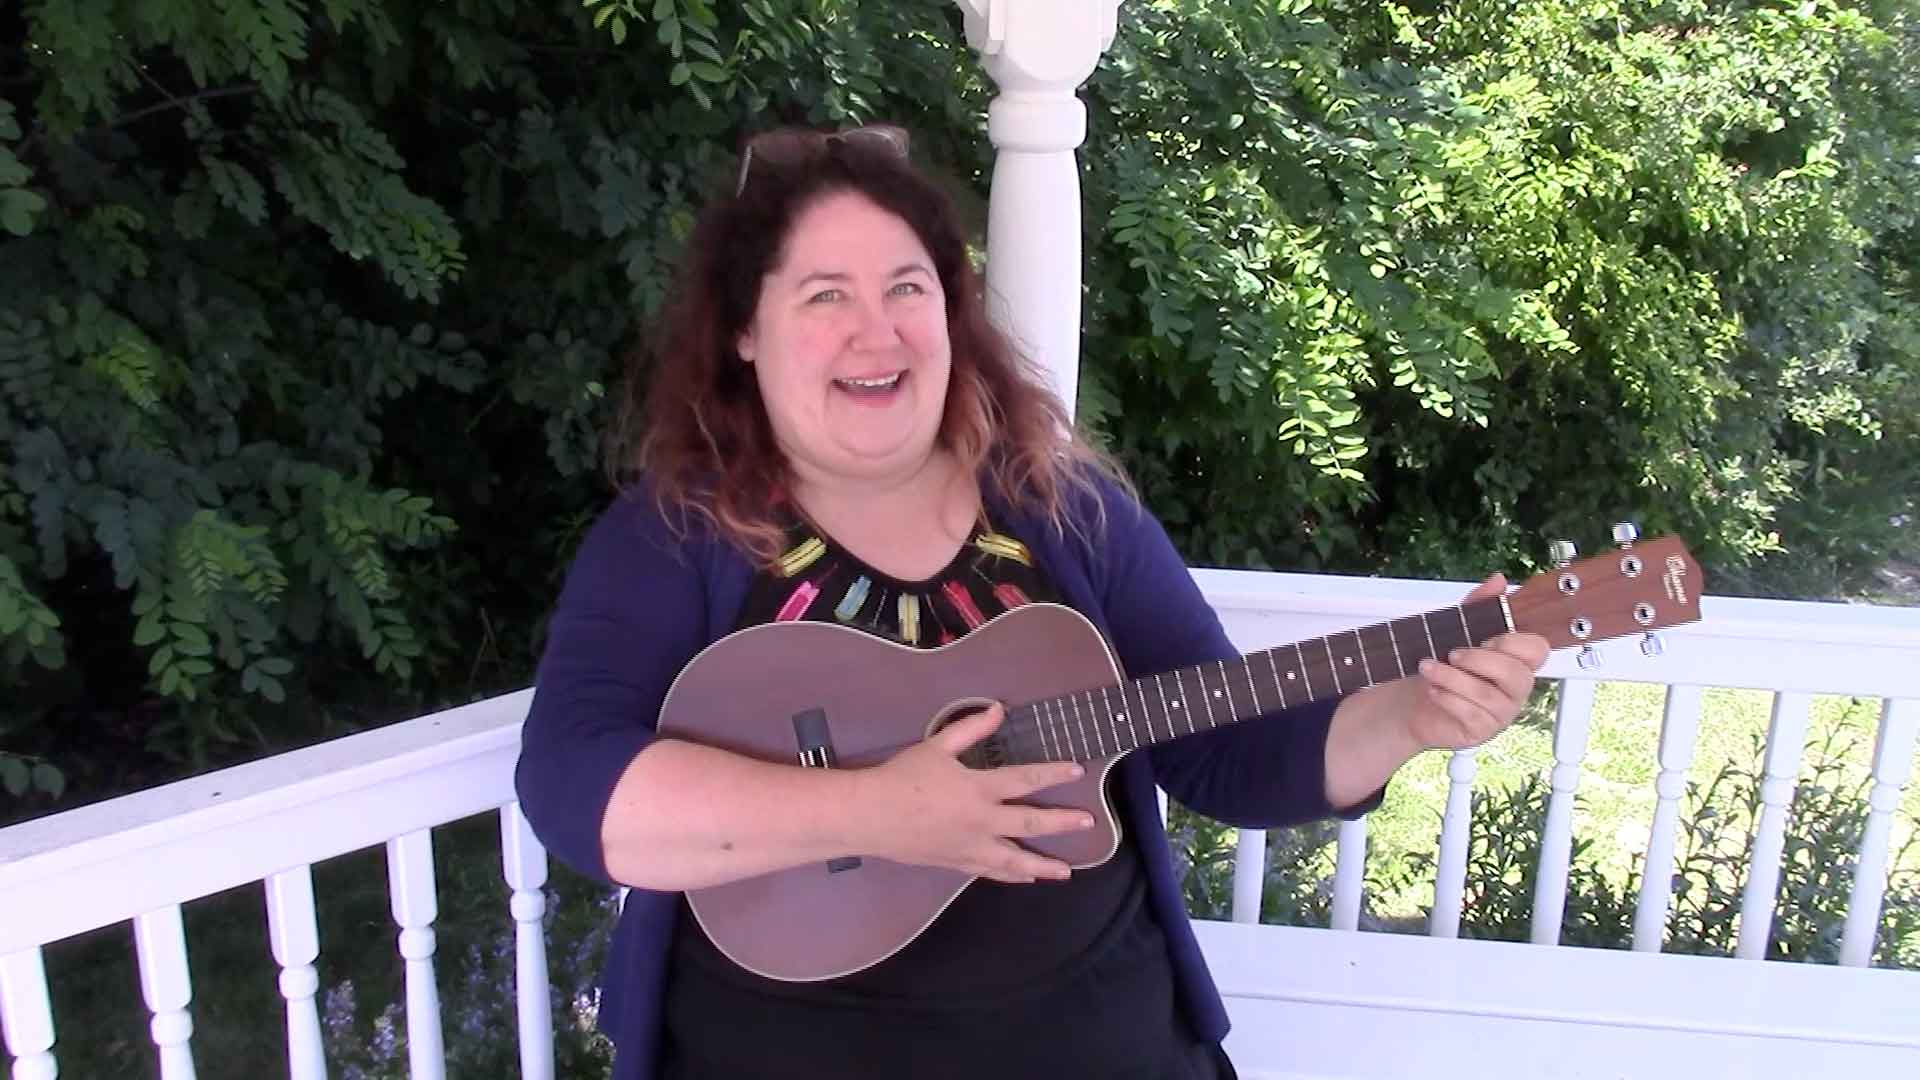 Melanie playing ukulele